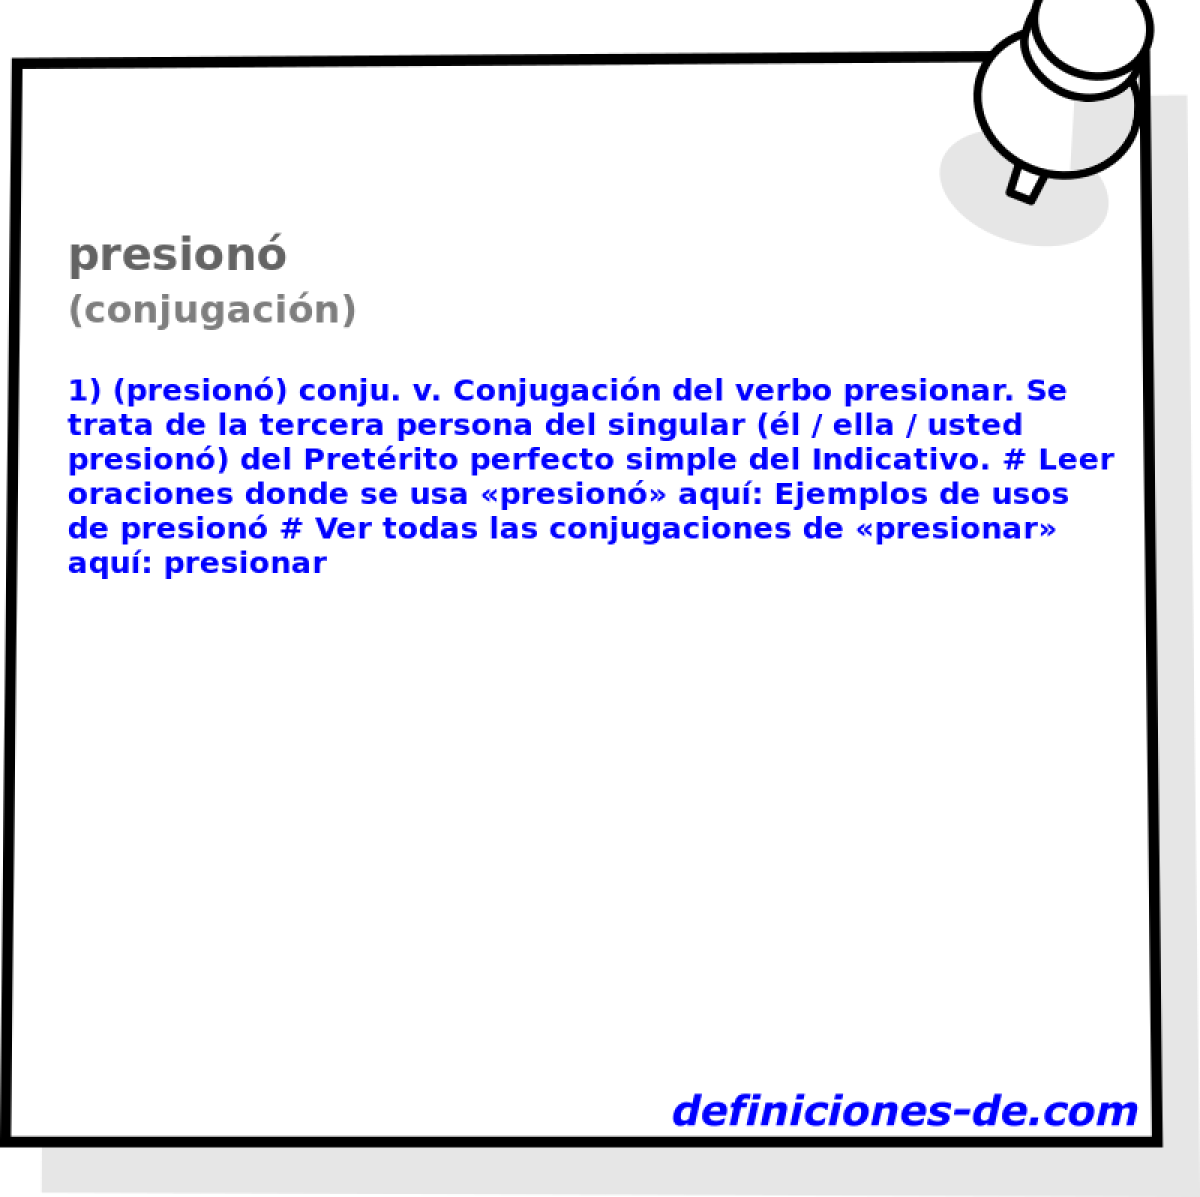 presion (conjugacin)